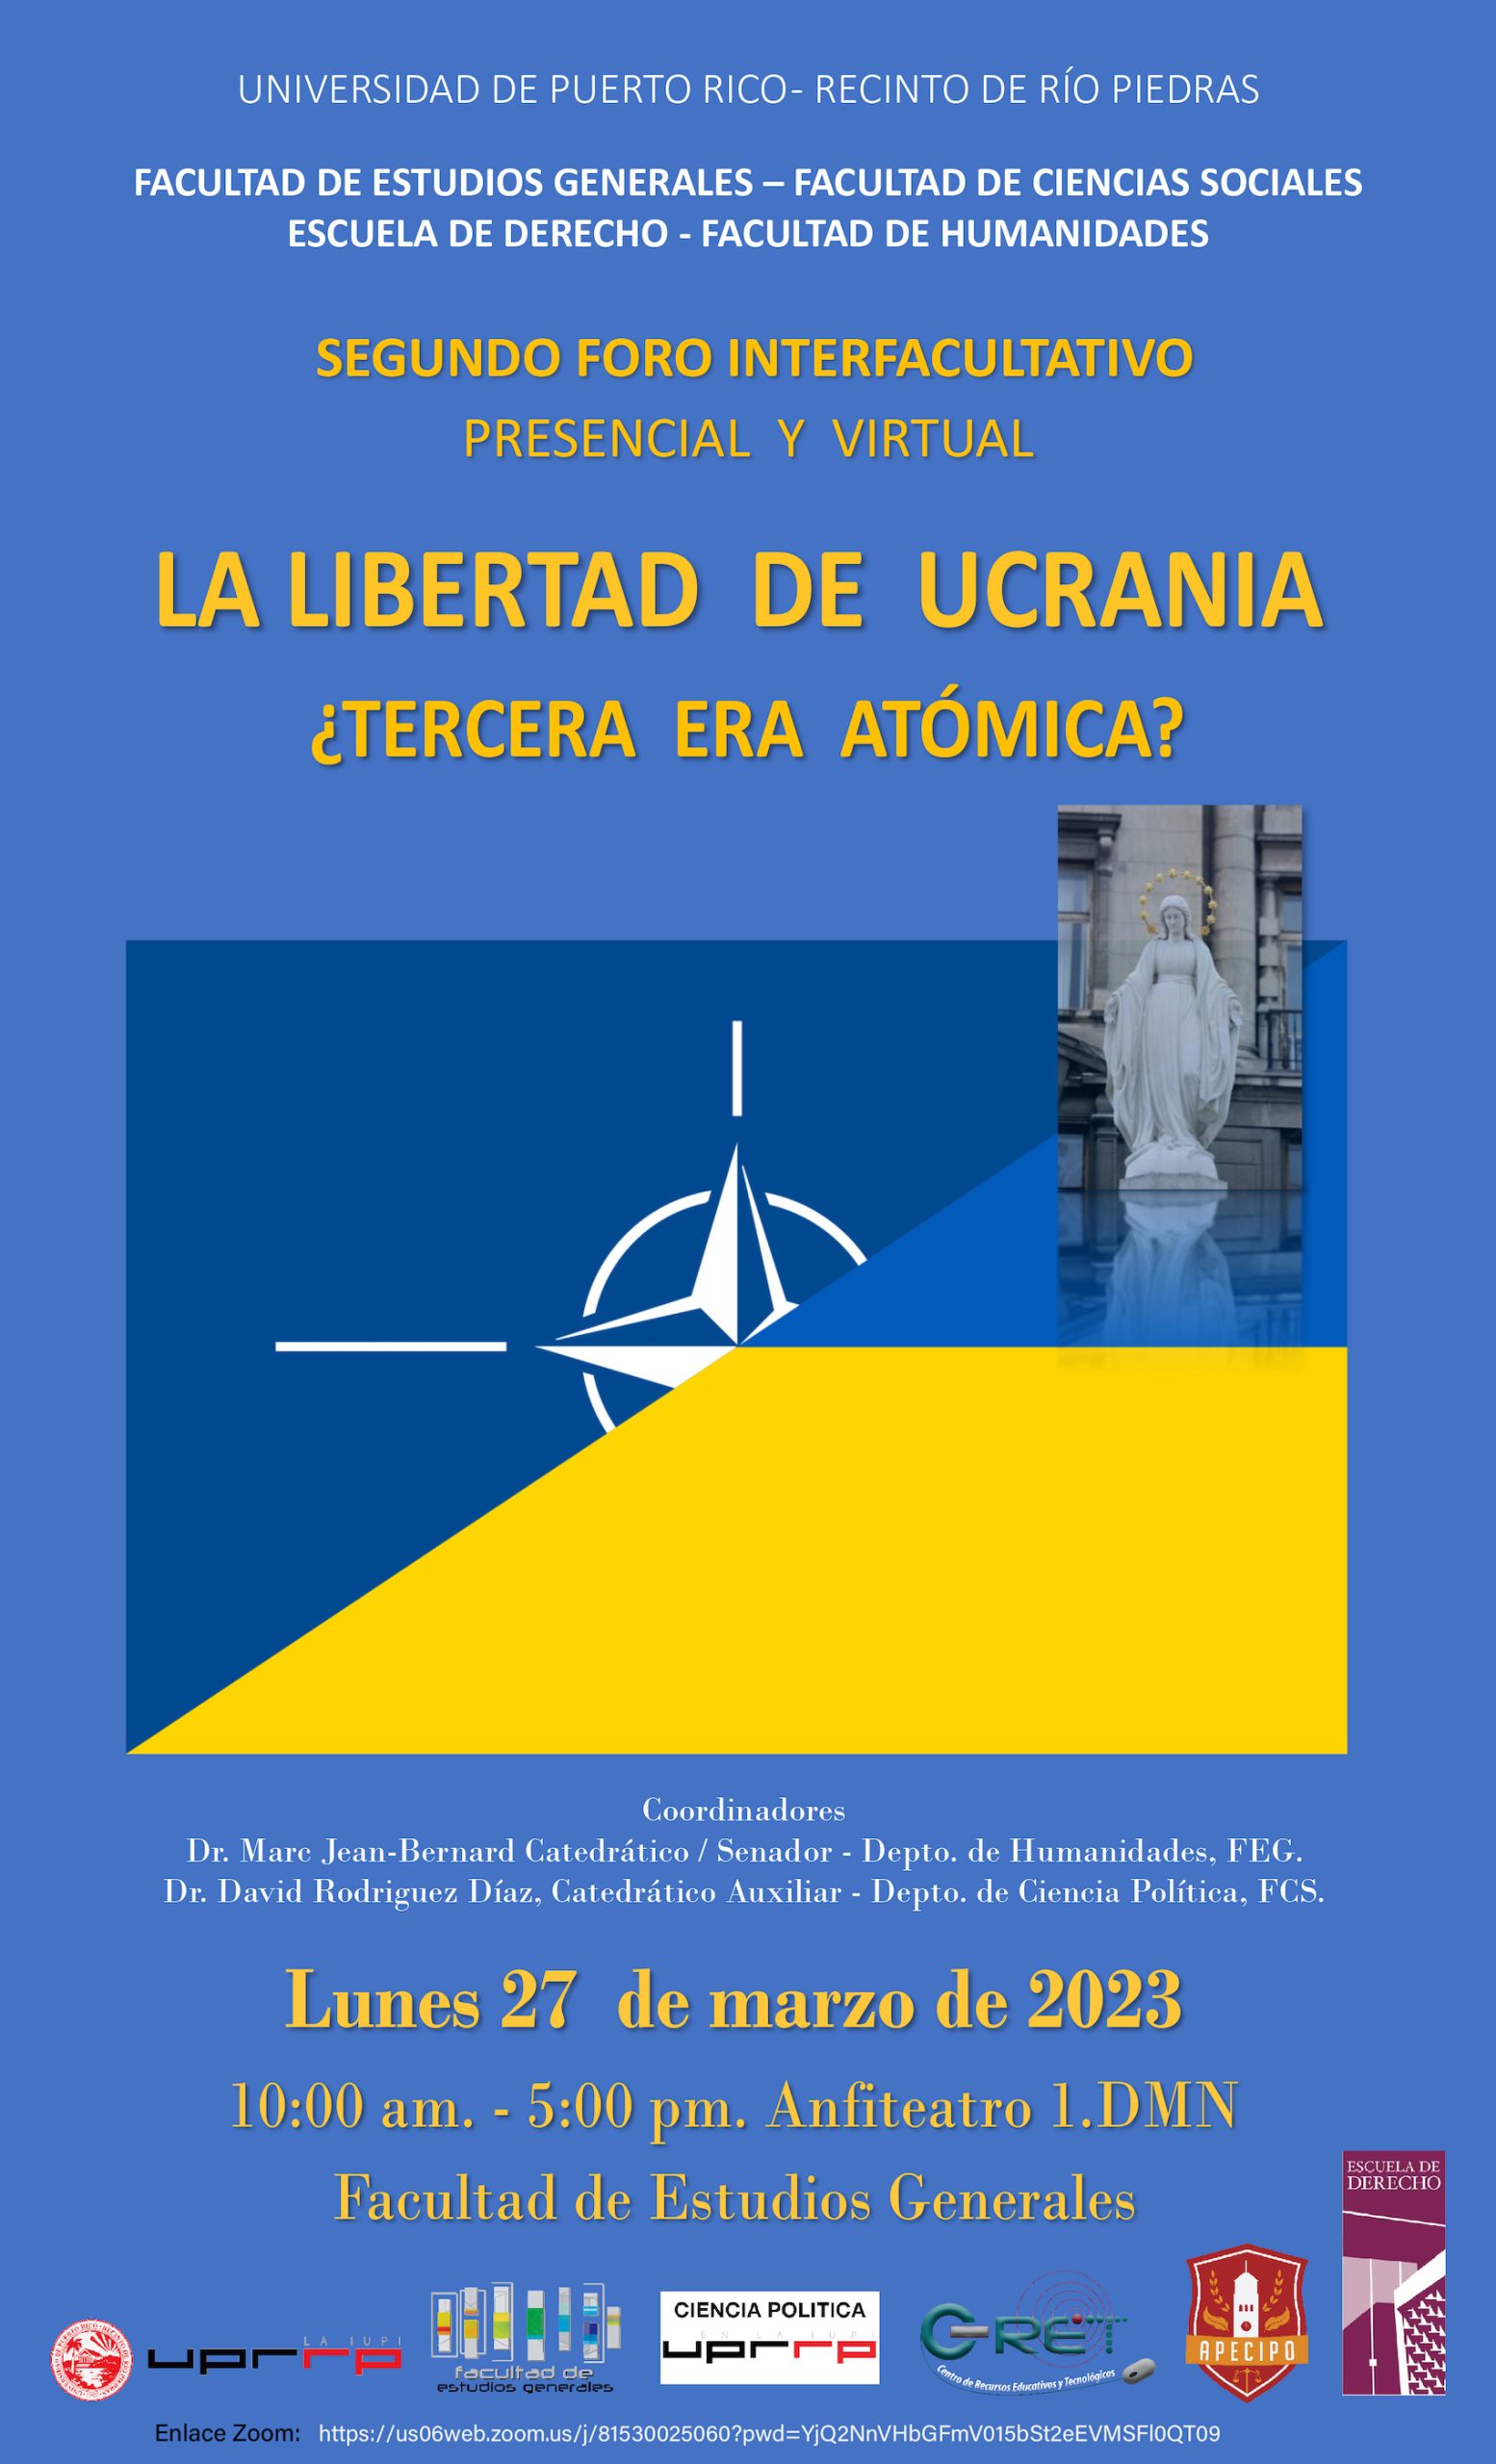 La libertad de ucrania el 27 de marzo desde las 10:00am en el Anfiteatro #1 de la Faculta de Estudios Generales